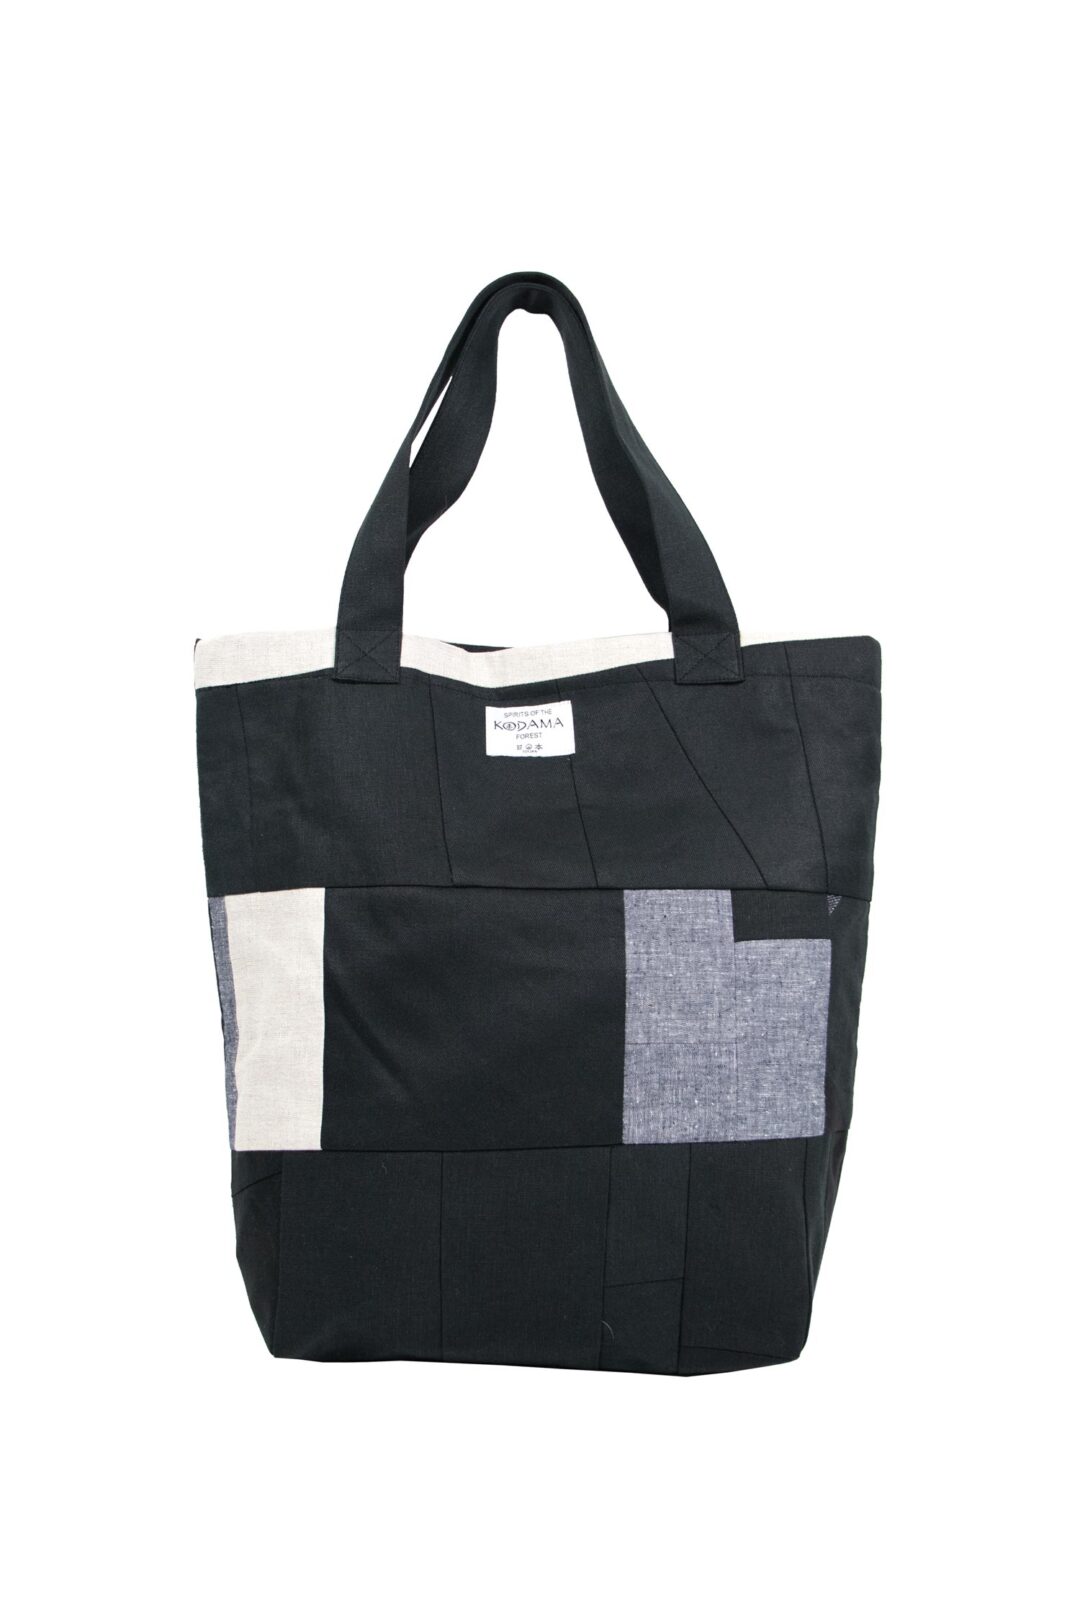 z06e-zero-waste-tote-bag-front